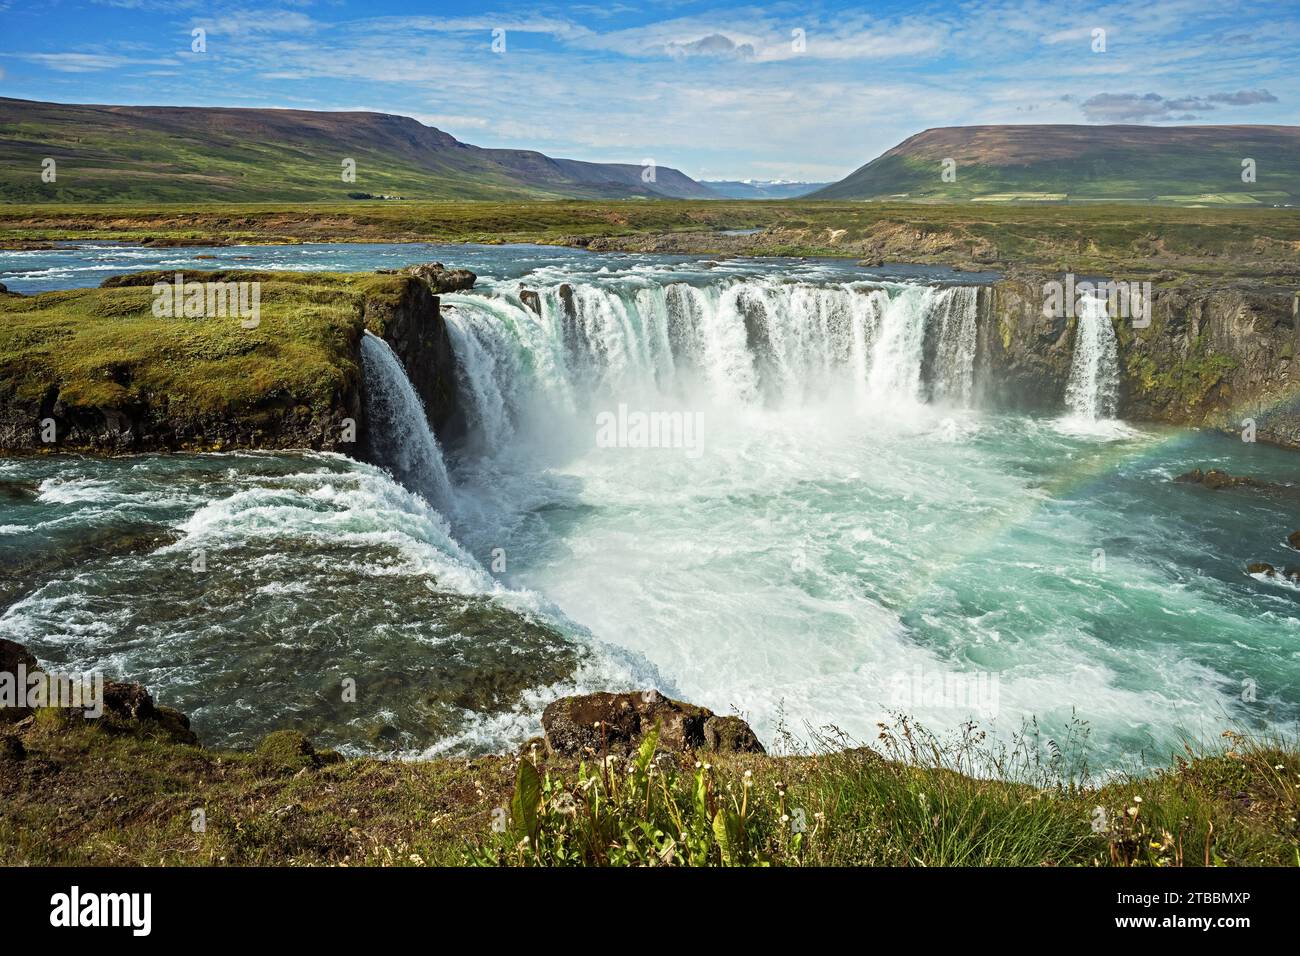 Il fiume Skjalfandafljot si schianta sopra la cascata di Godafoss nell'Islanda settentrionale con un cielo parzialmente nuvoloso sullo sfondo Foto Stock